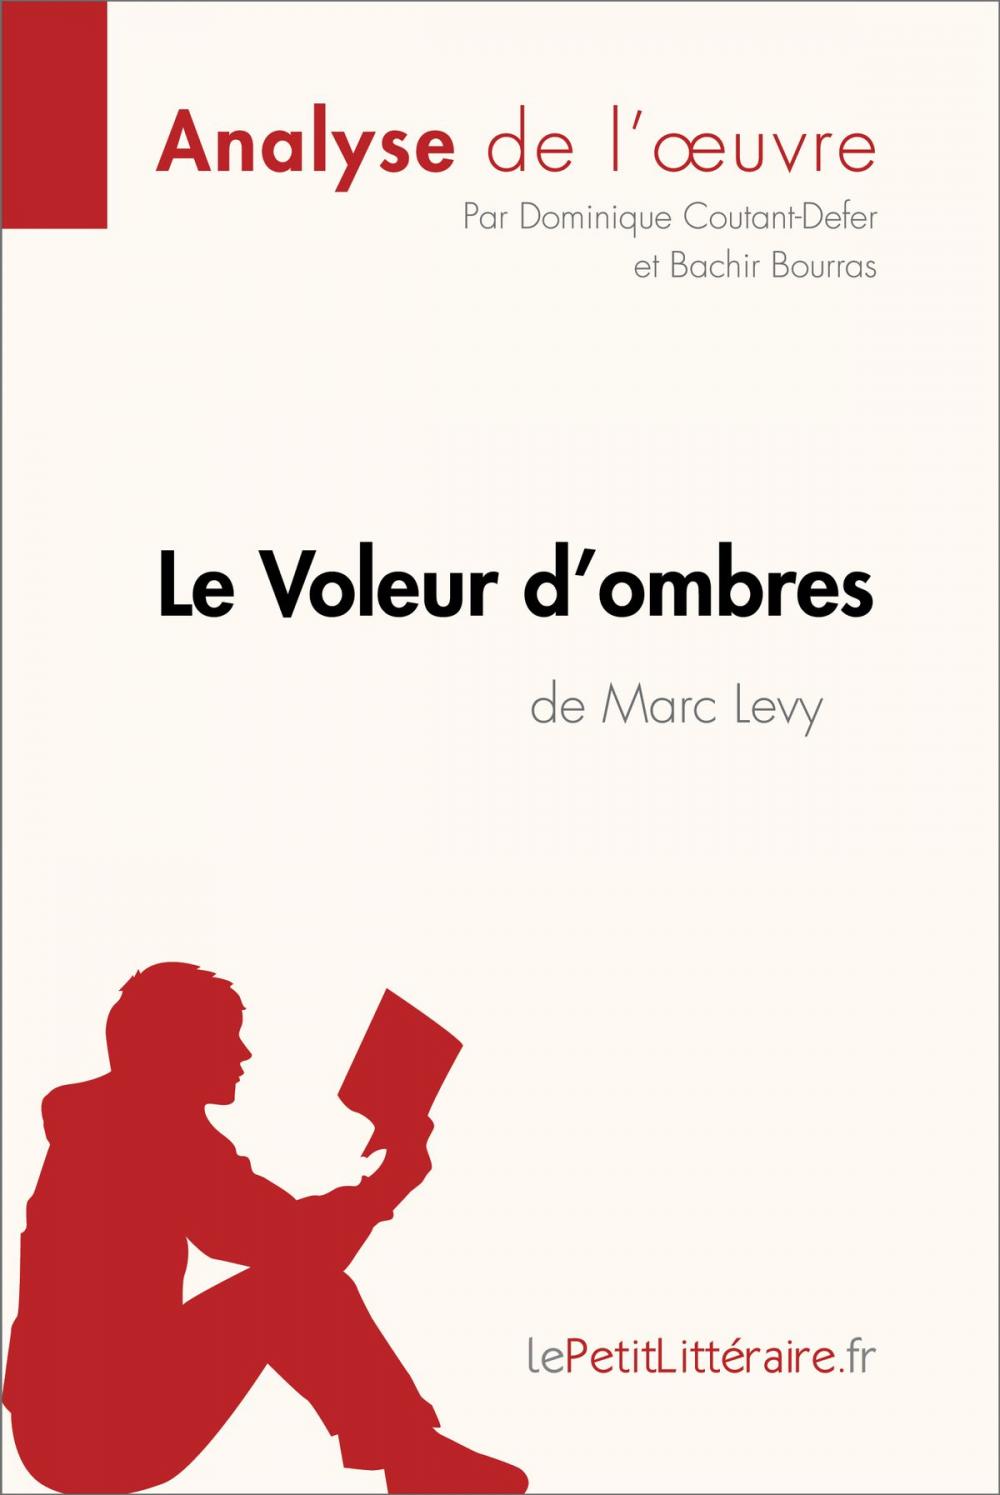 Big bigCover of Le Voleur d'ombres de Marc Levy (Analyse de l'oeuvre)